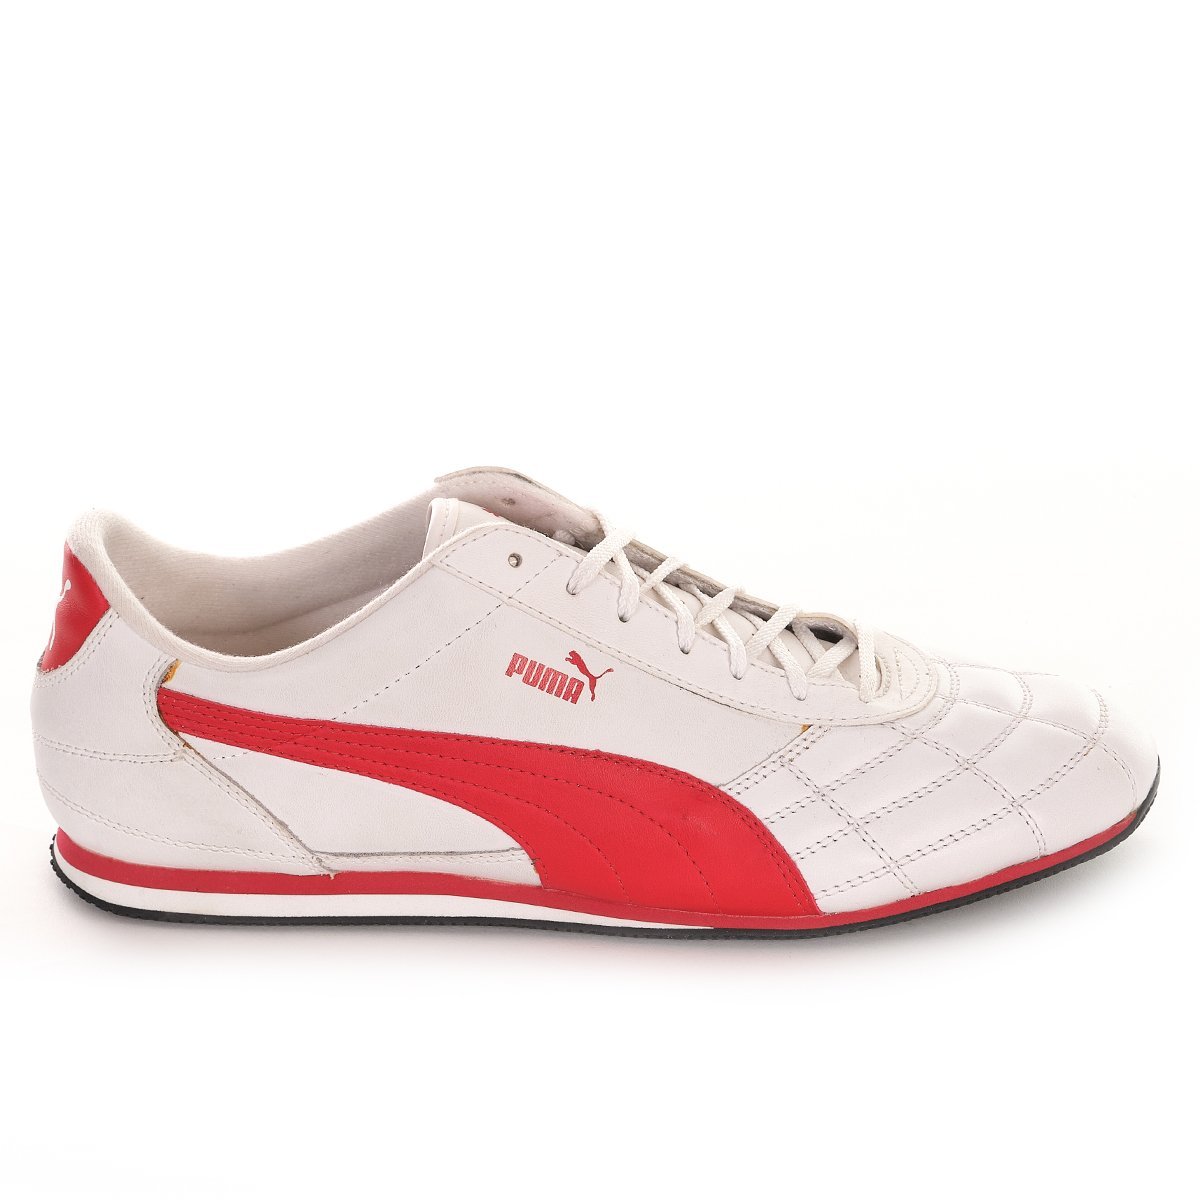 Topánky Puma M - white/red, II.akosť